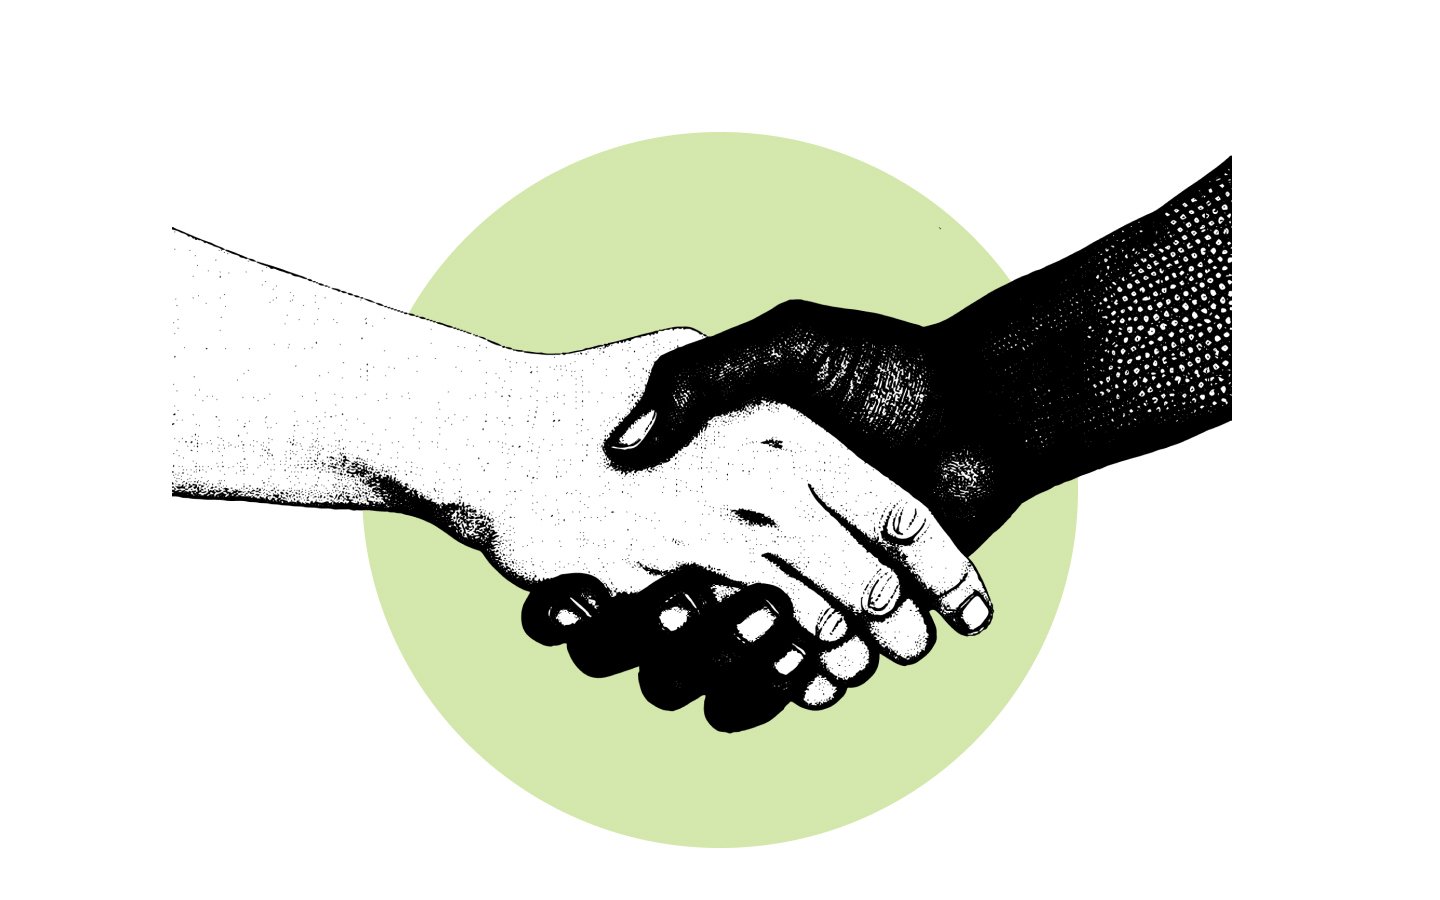 Two people handshaking - sales scripts